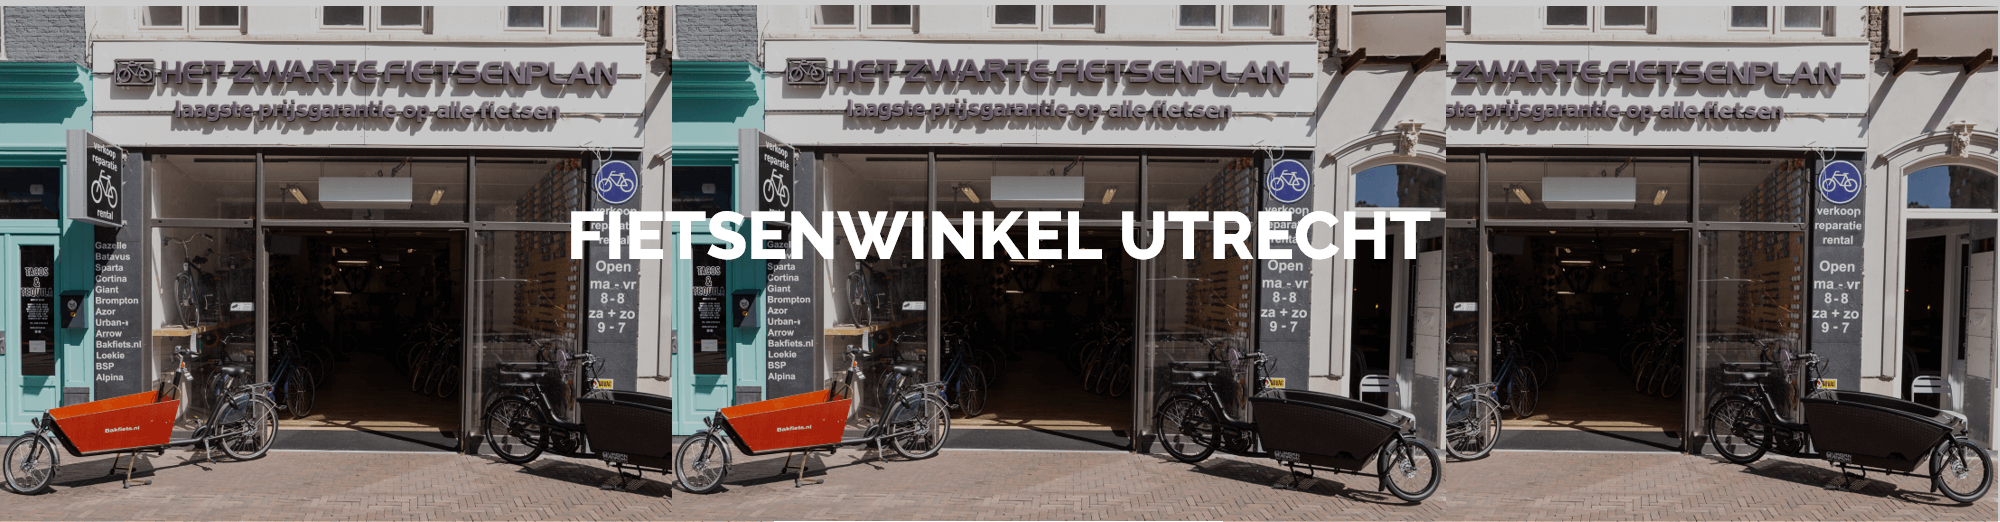 Afm fascisme Parel Fietsenwinkel Utrecht | Het Zwarte Fietsenplan